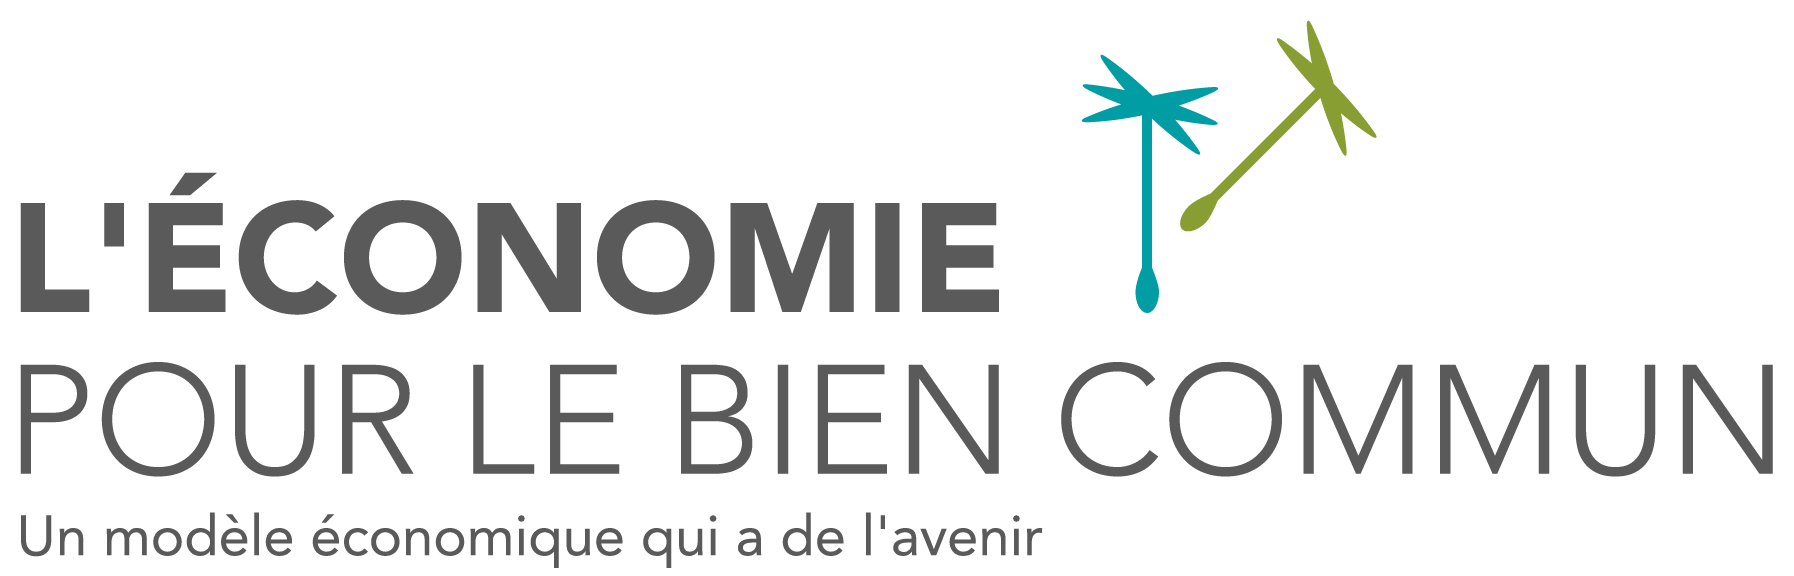 logo_ECG_fr_color_WEB.png